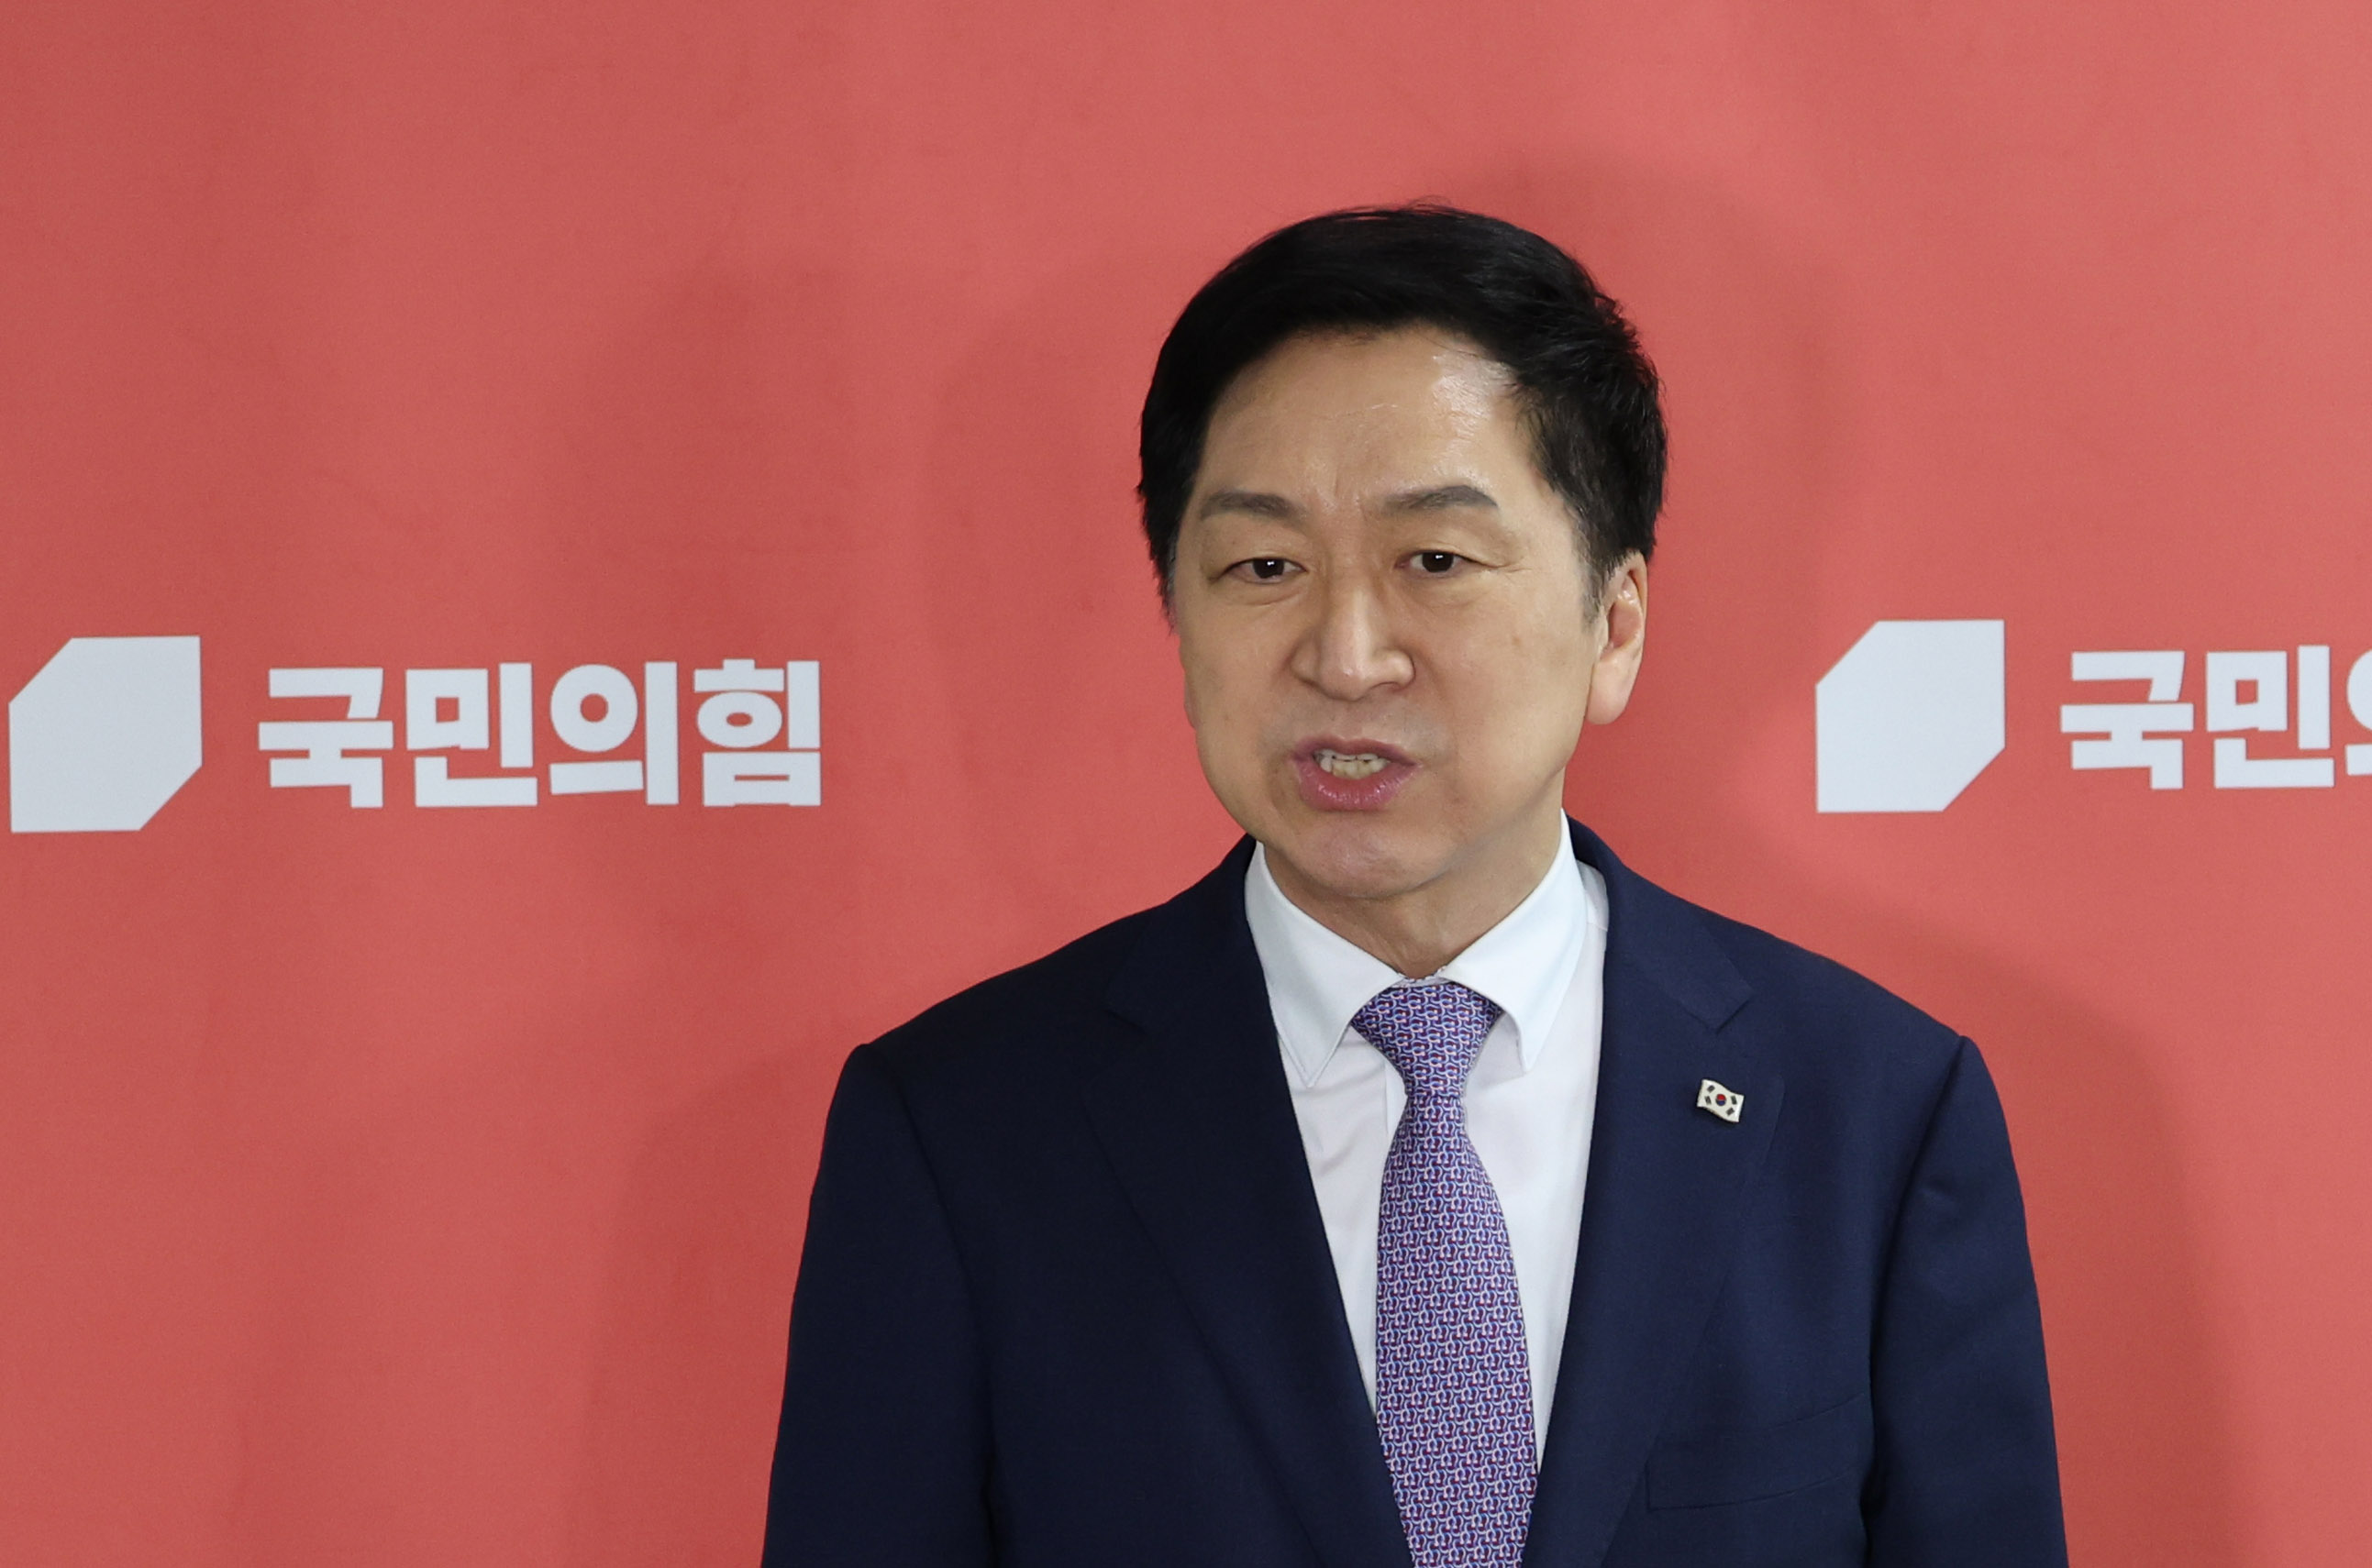 취재진 질문에 답하는 김기현 대표